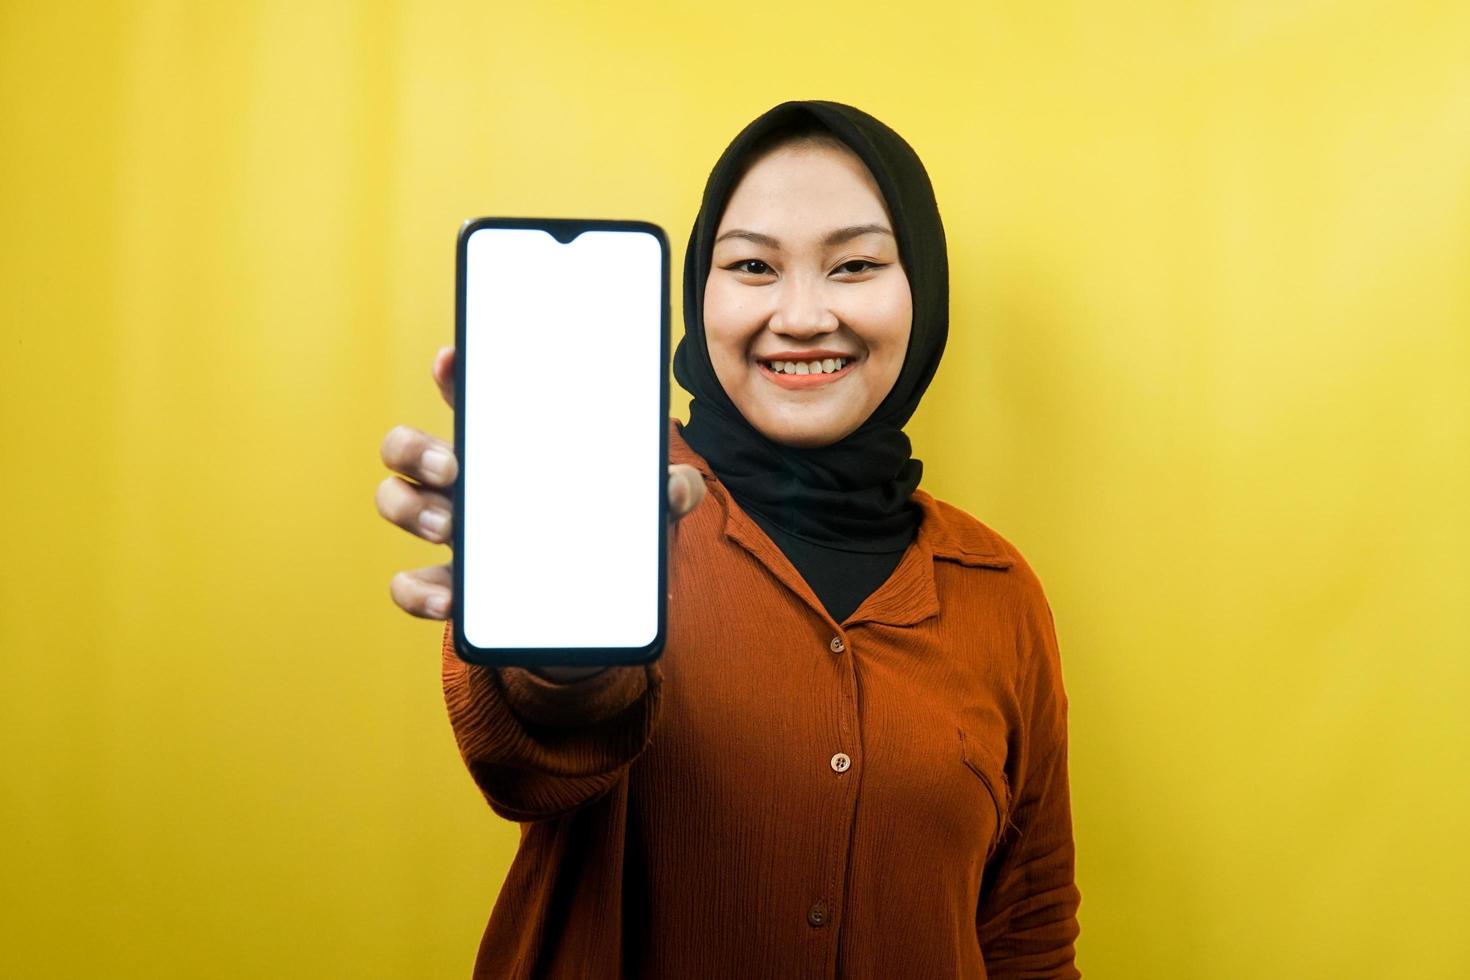 belle jeune femme musulmane asiatique tenant un smartphone avec écran blanc ou vierge, faisant la promotion de l'application, faisant la promotion de quelque chose, isolé, concept publicitaire photo